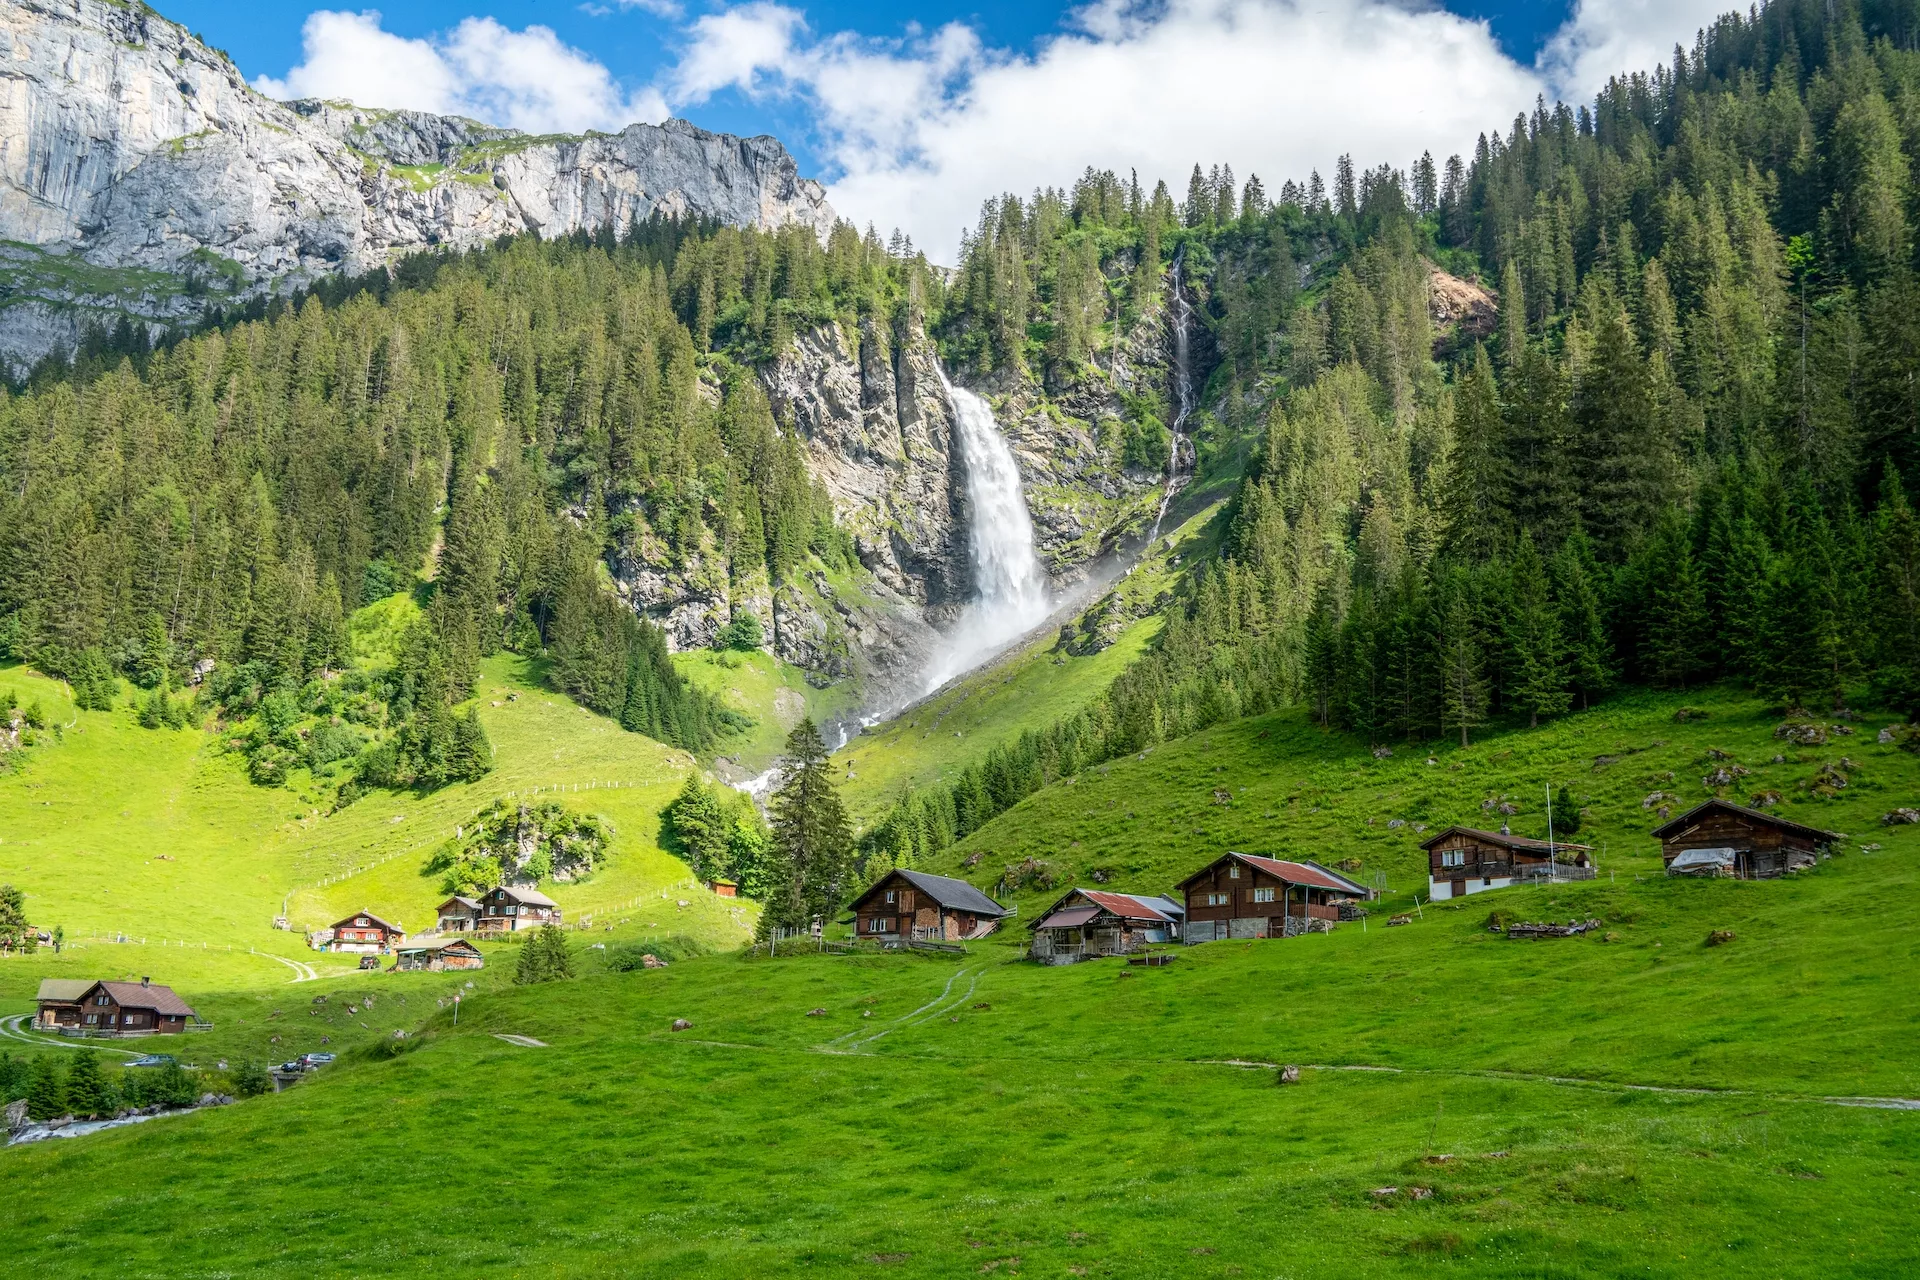 La meravigliosa cascata Stauber nella valle di Schachen